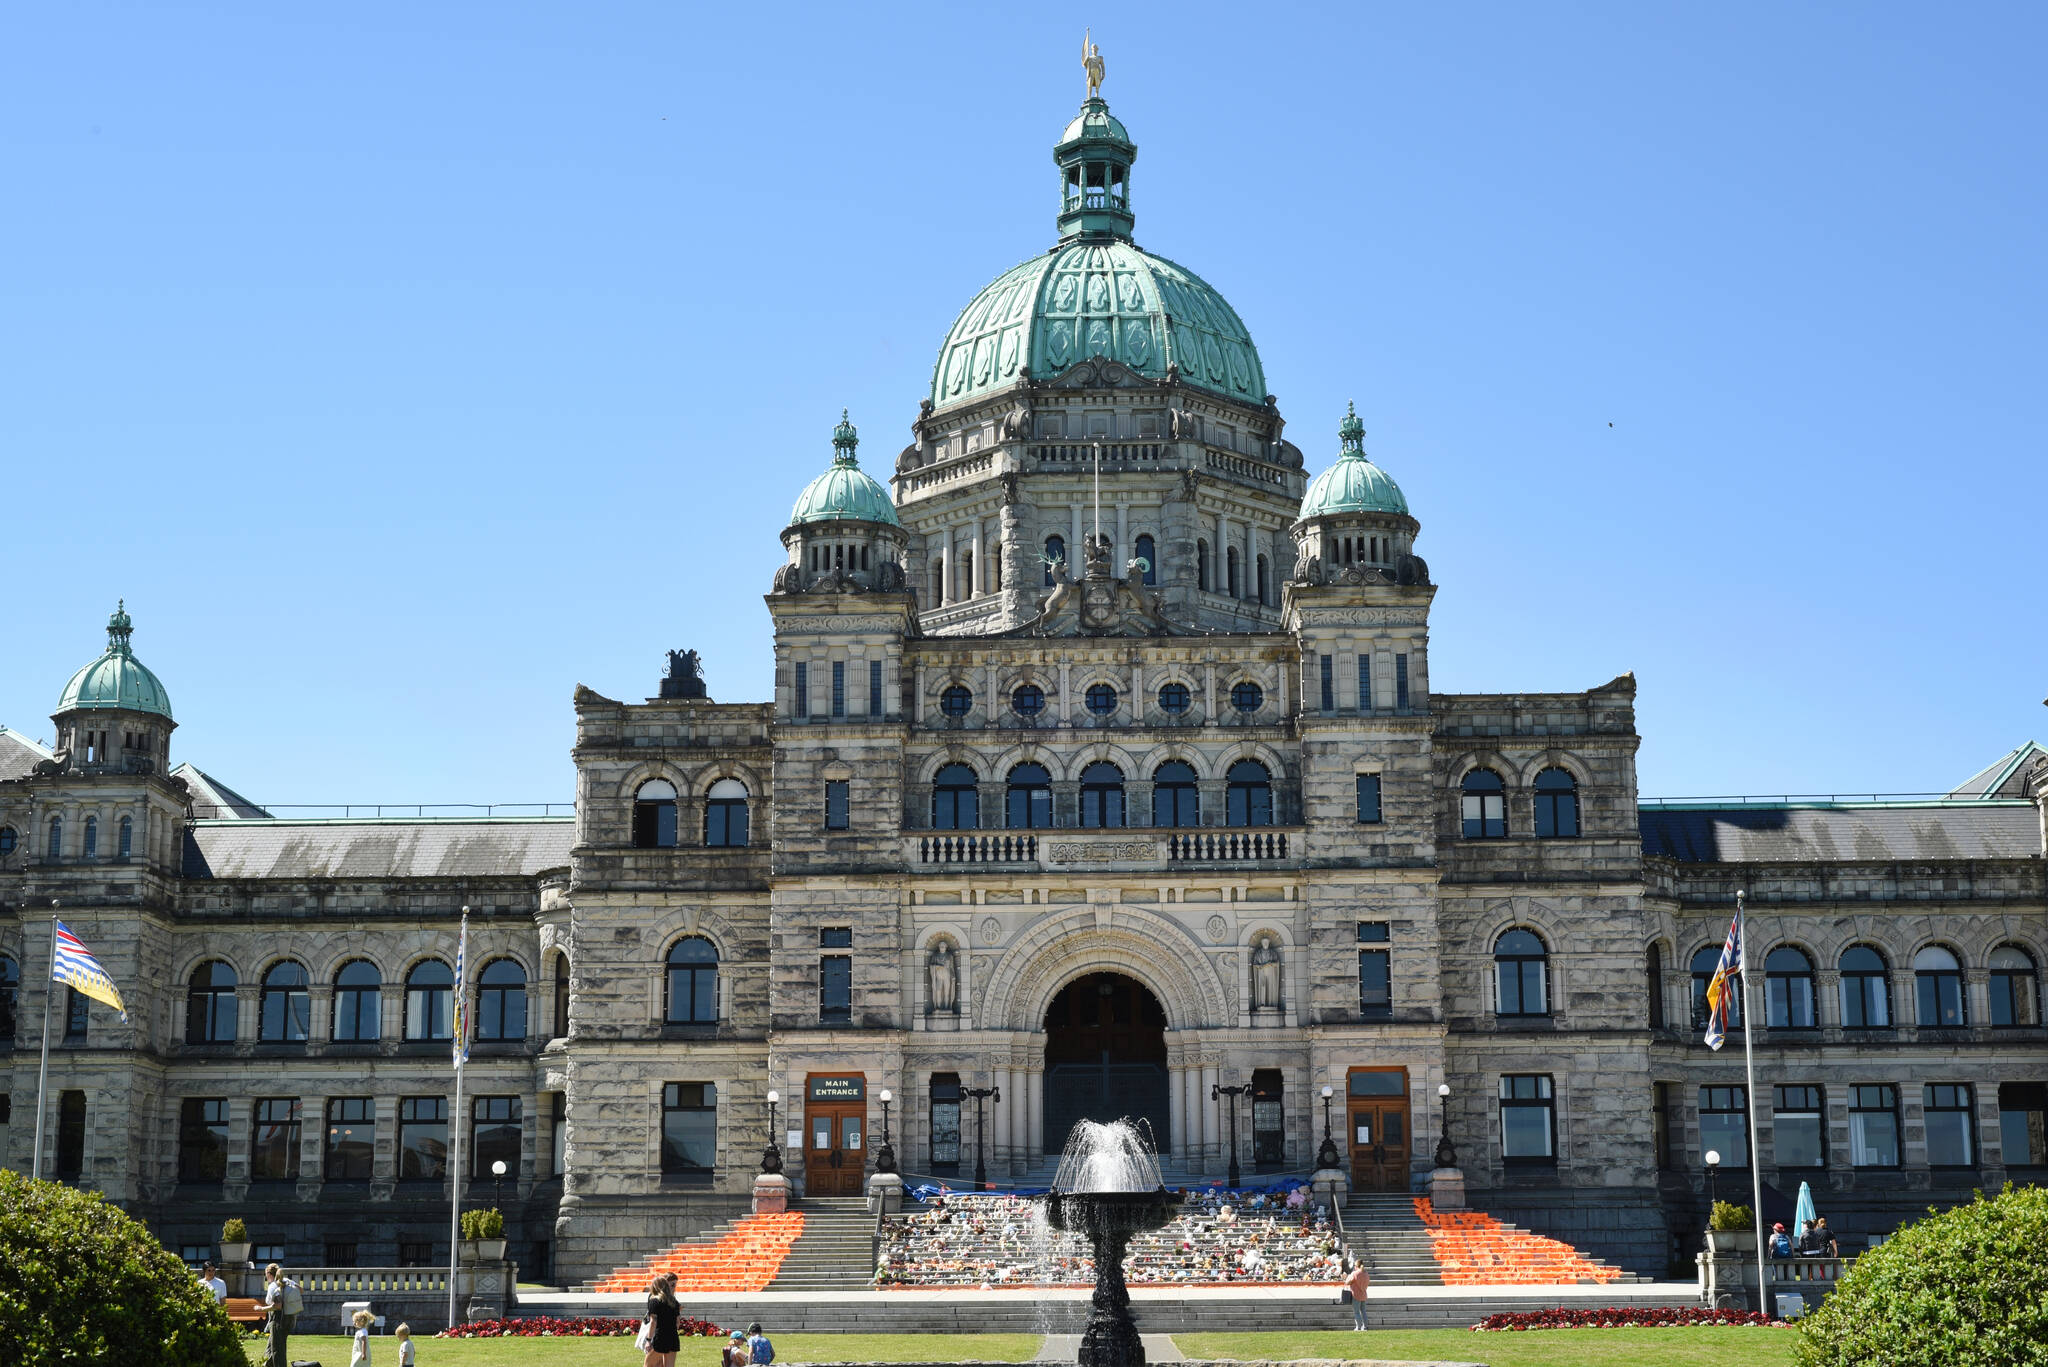 June 21, 2021 - The front of the BC Legislature's Parliament building designed by architect Frances Rattenbury. Don Denton photograph